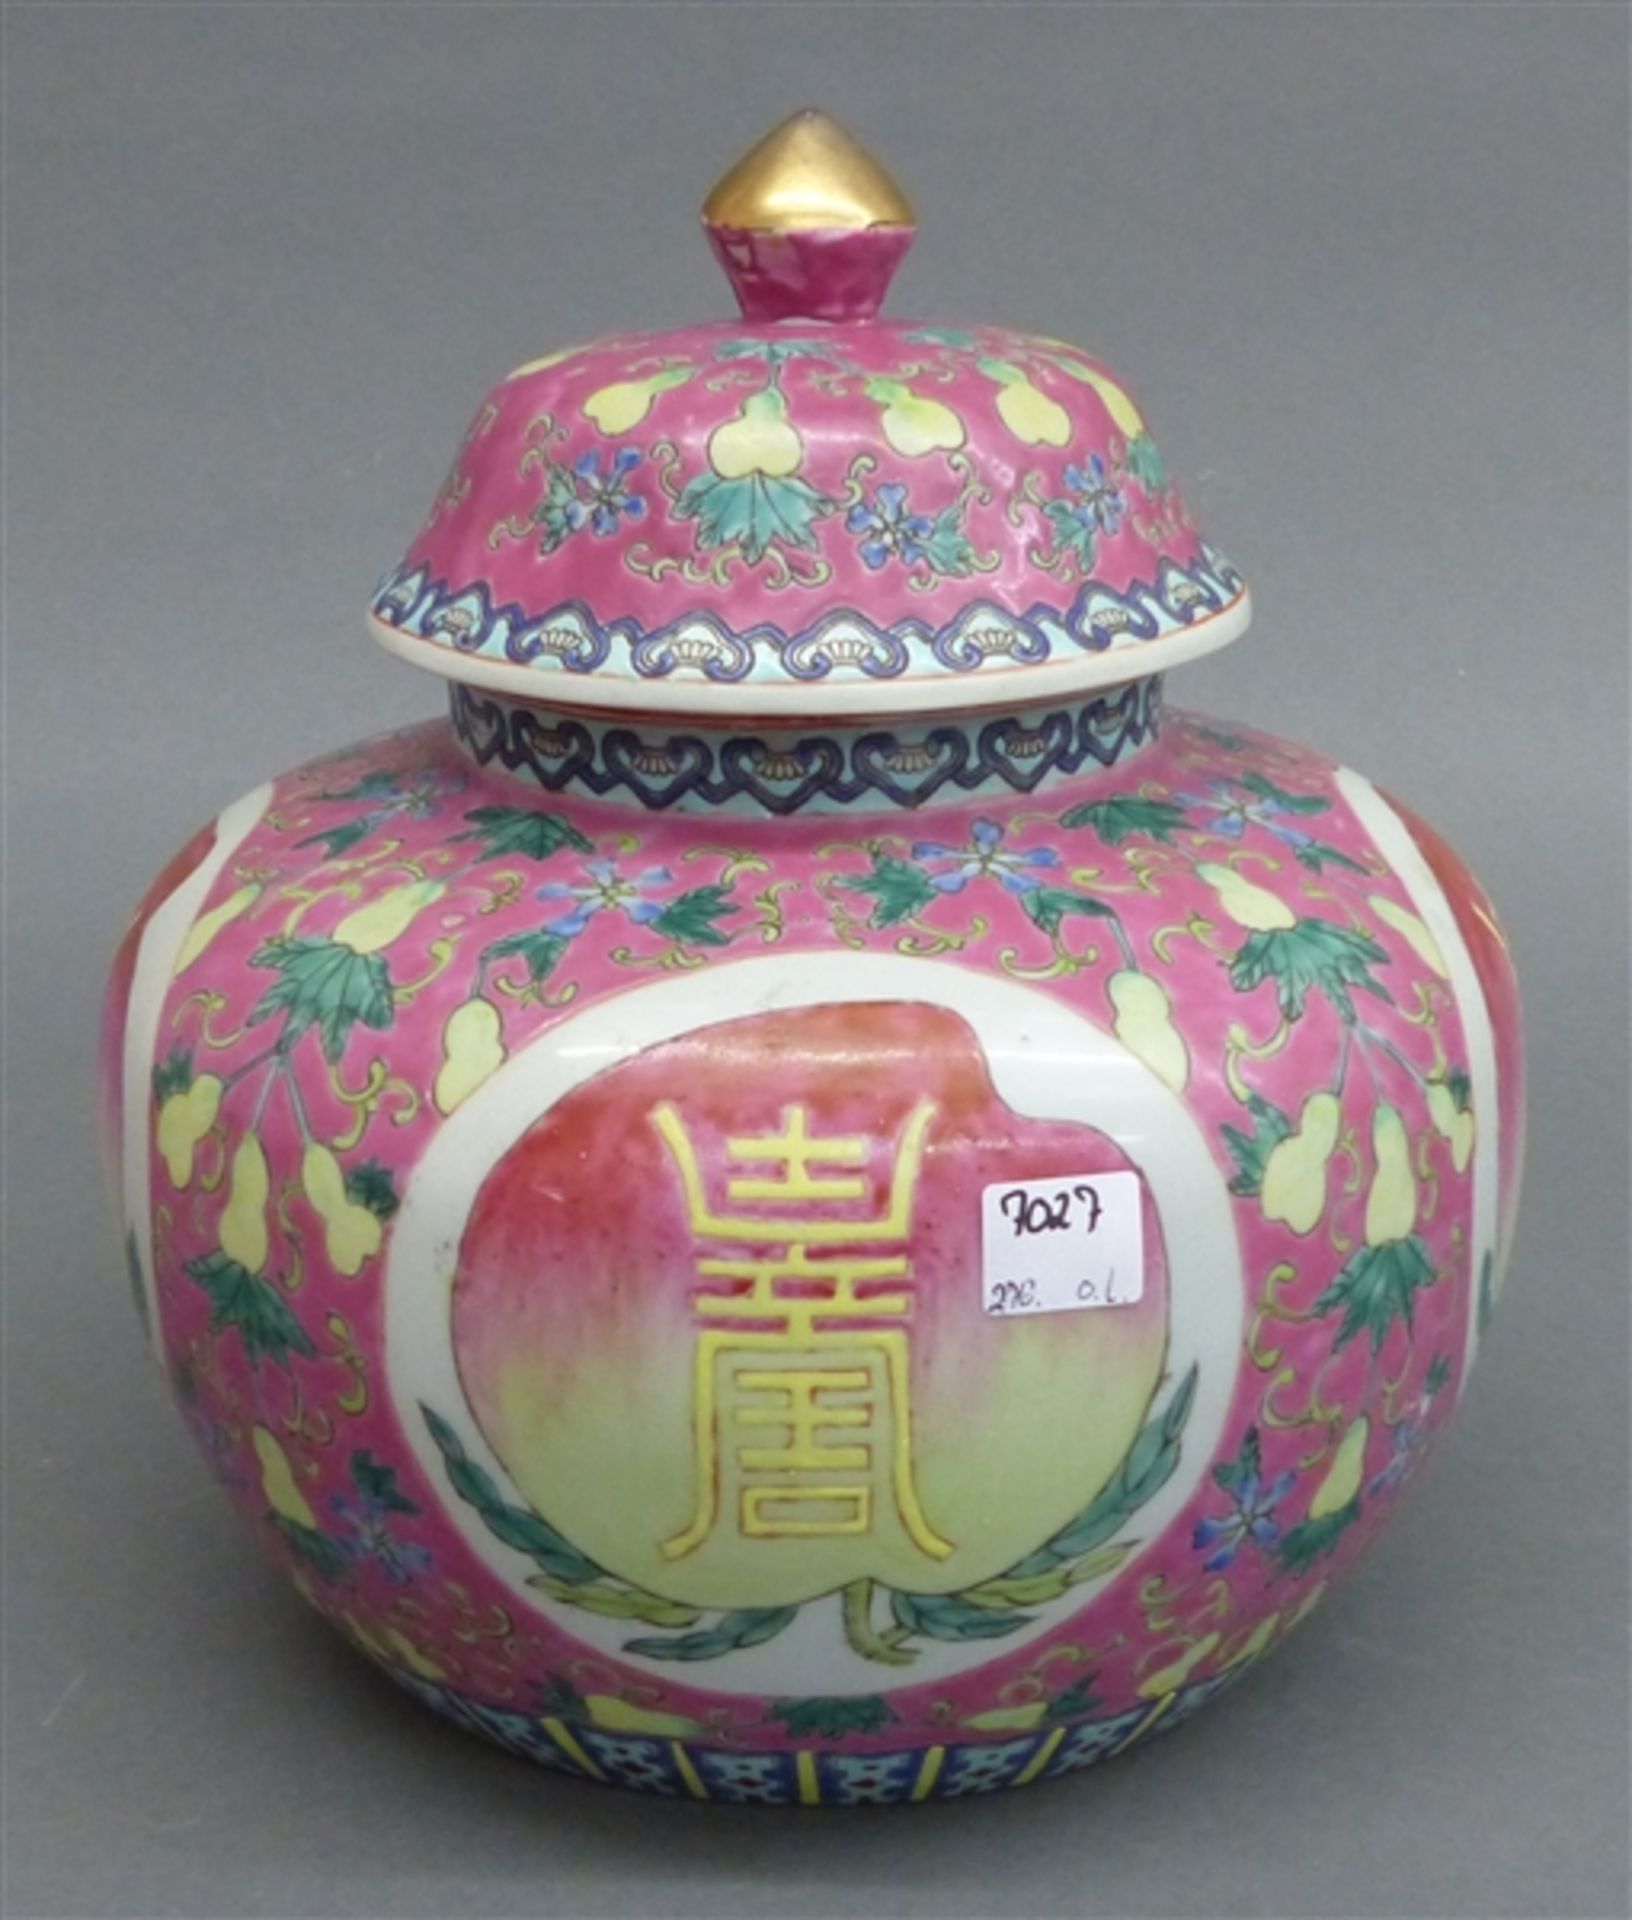 Deckelvase Porzellan, China 20. Jh., bemalt, Rankendekor, Schriftzeichen, h 25 cm,